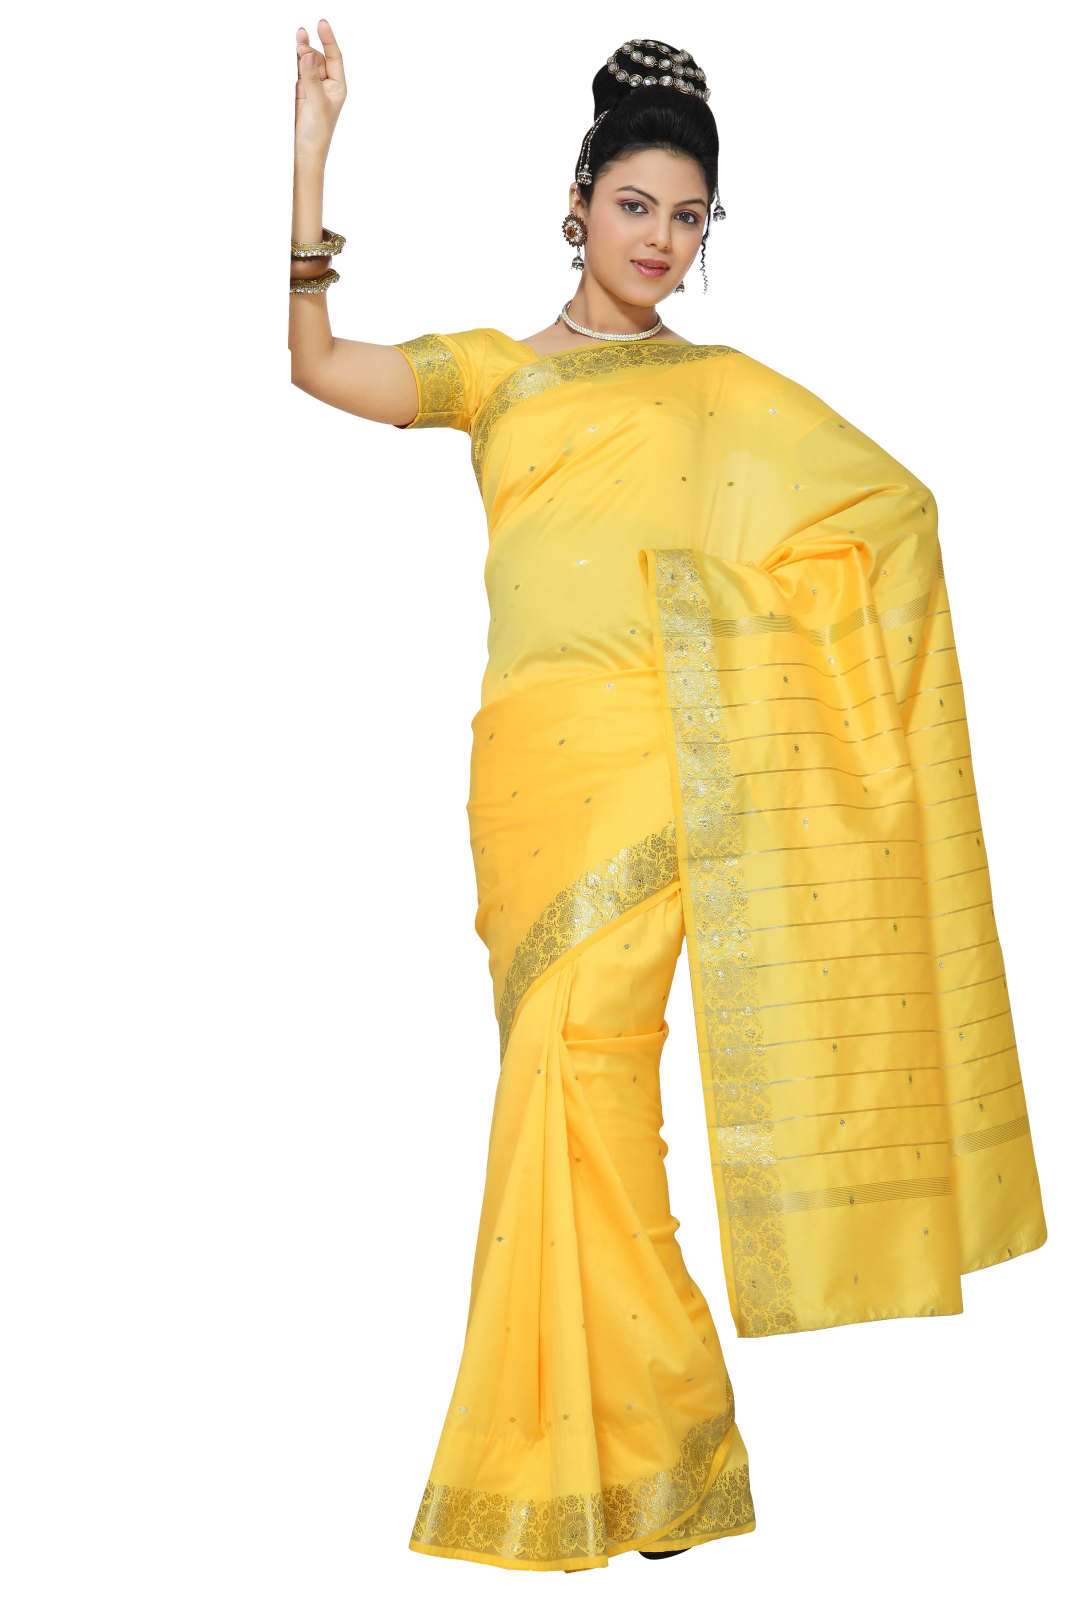 Indian Selections Yellow Art Silk Saree Sari fabric India Golden Border